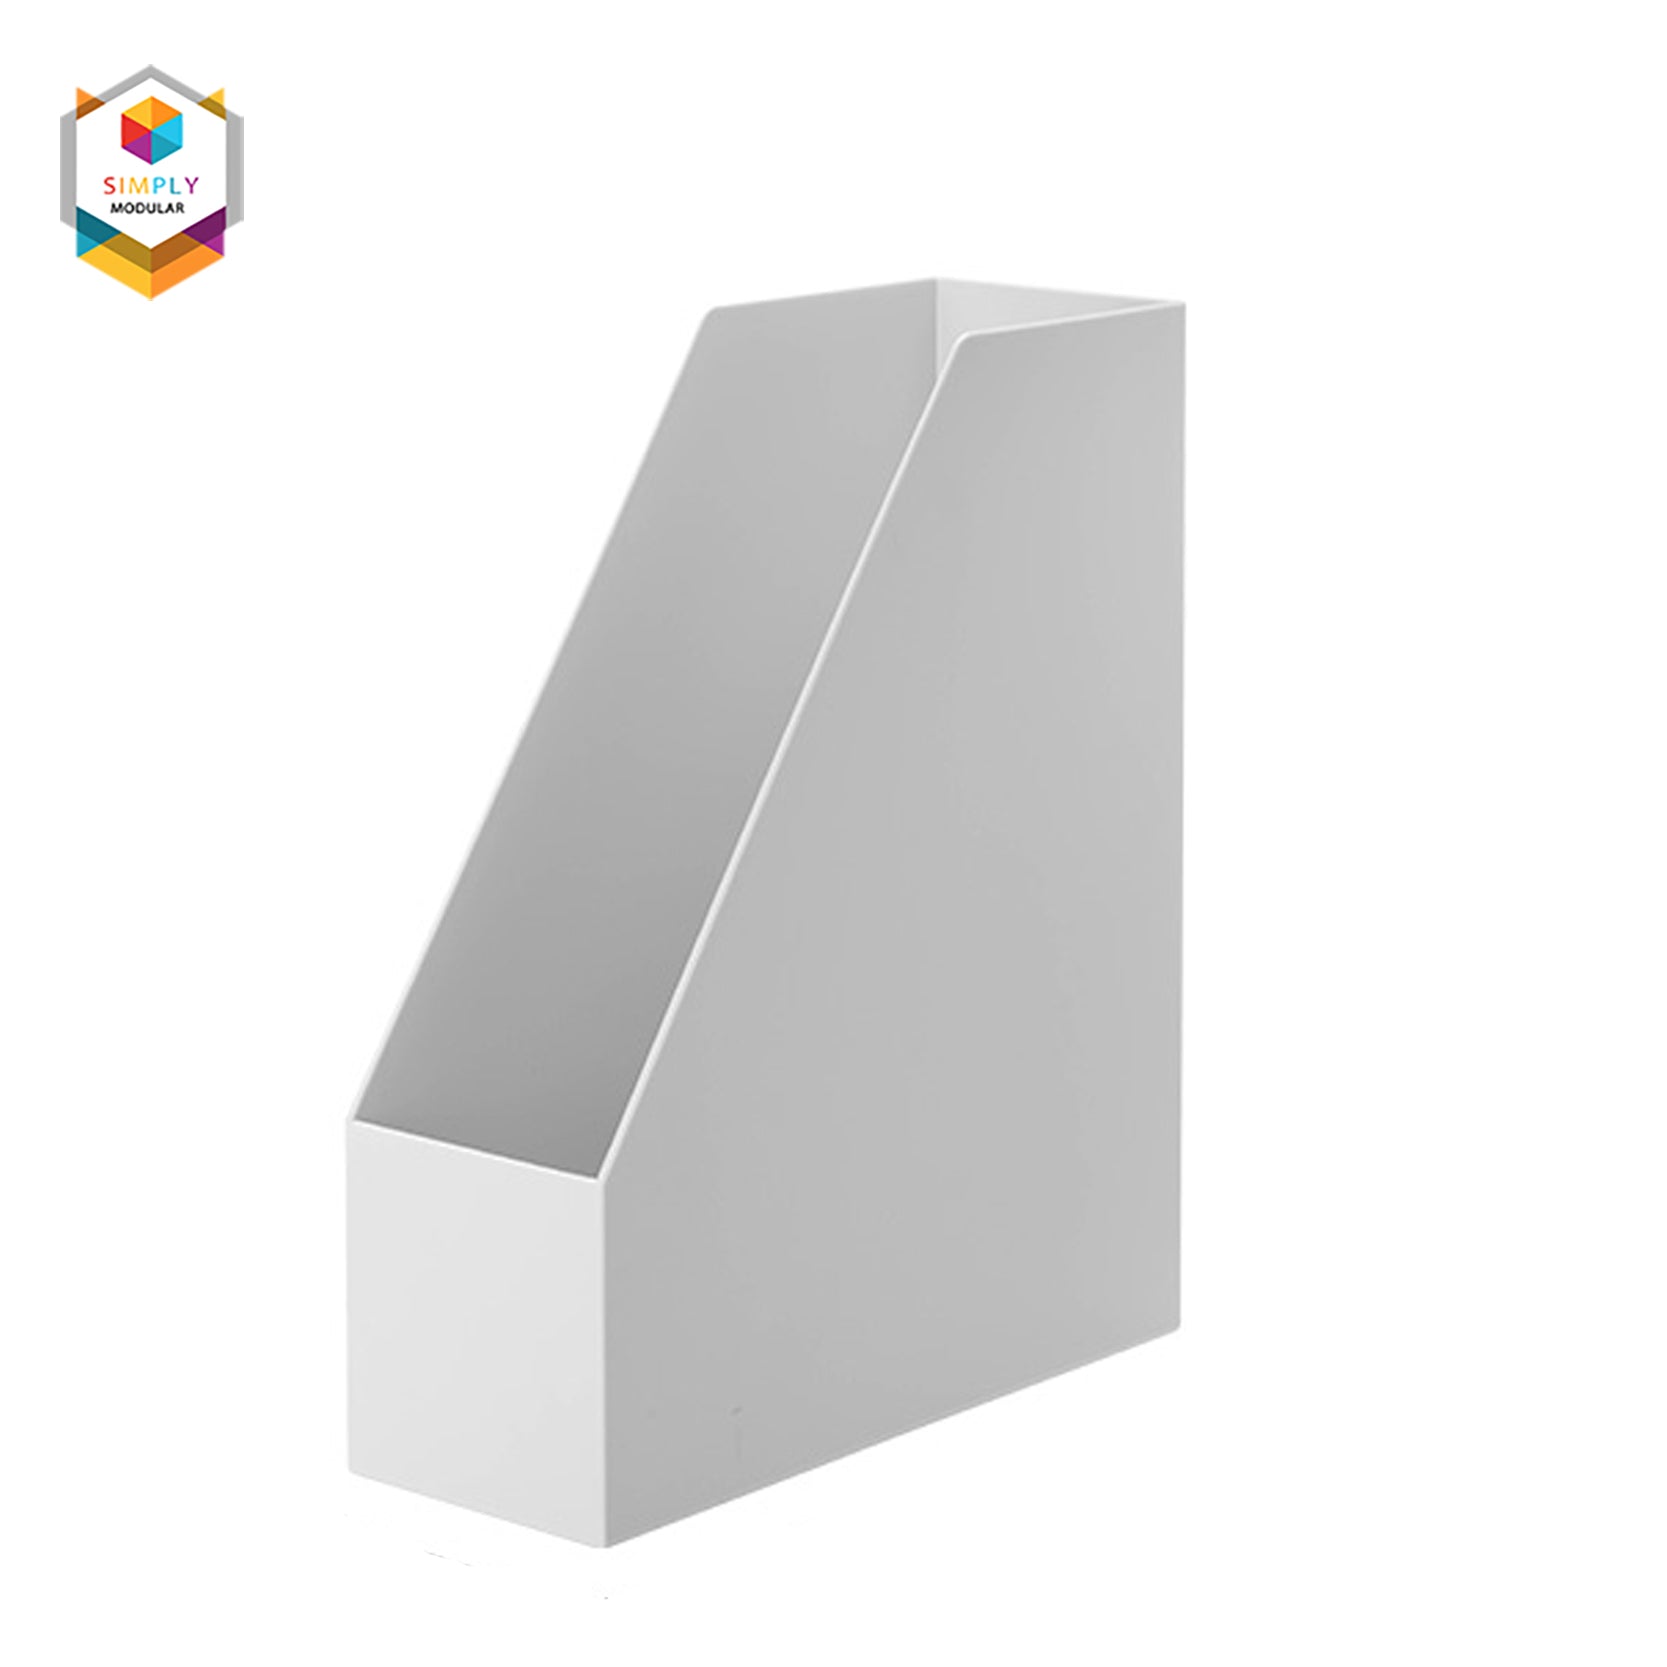 Shimoyama Muji Style PE Storage Box Organizer Soft Touch Big Deep Size (no  lid) - Size C